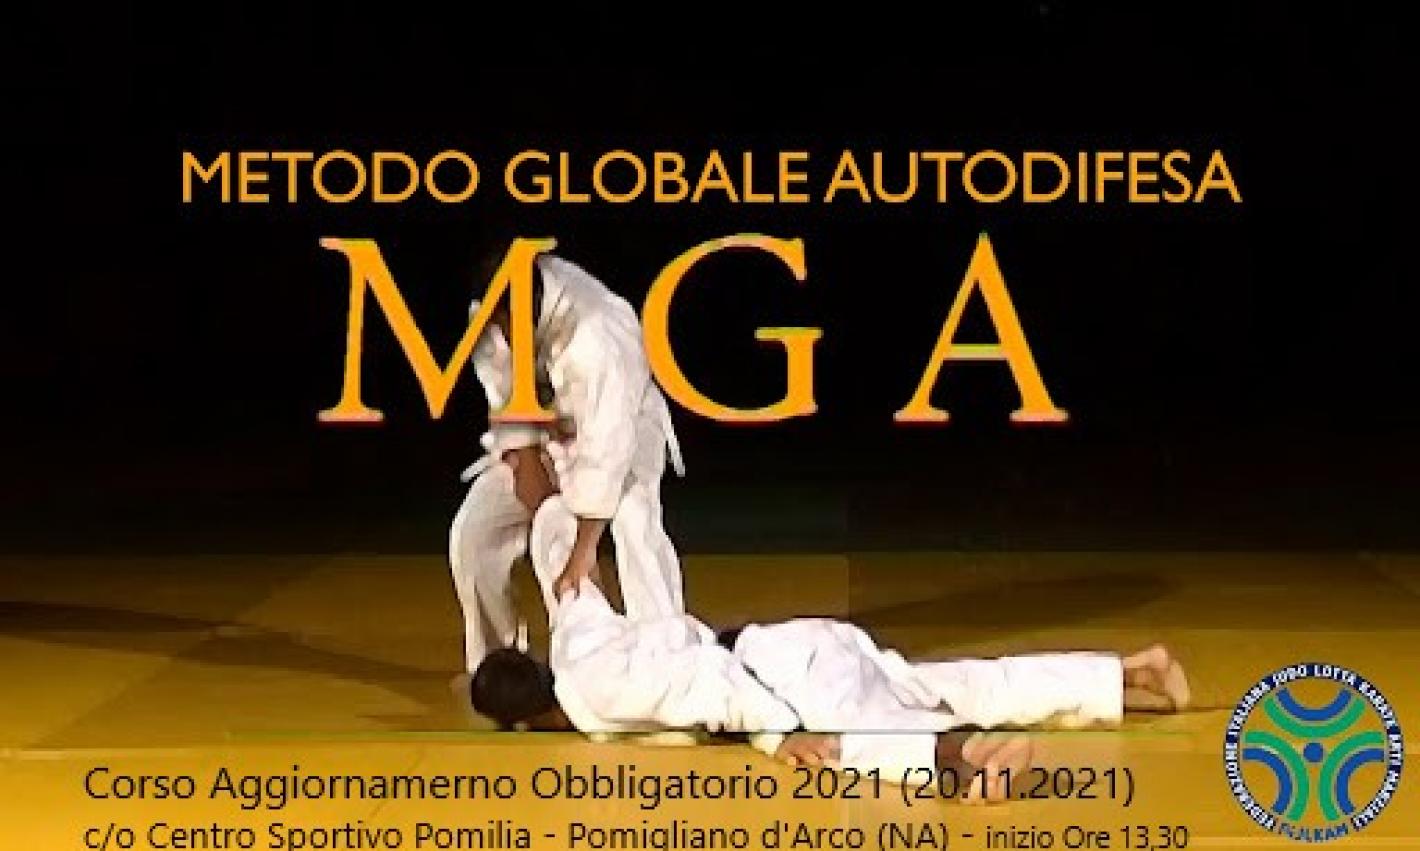 images/campania/comitato2021/MGA/corso_agg/medium/WhatsApp_Image_2021-11-09_at_11.22.05.jpeg